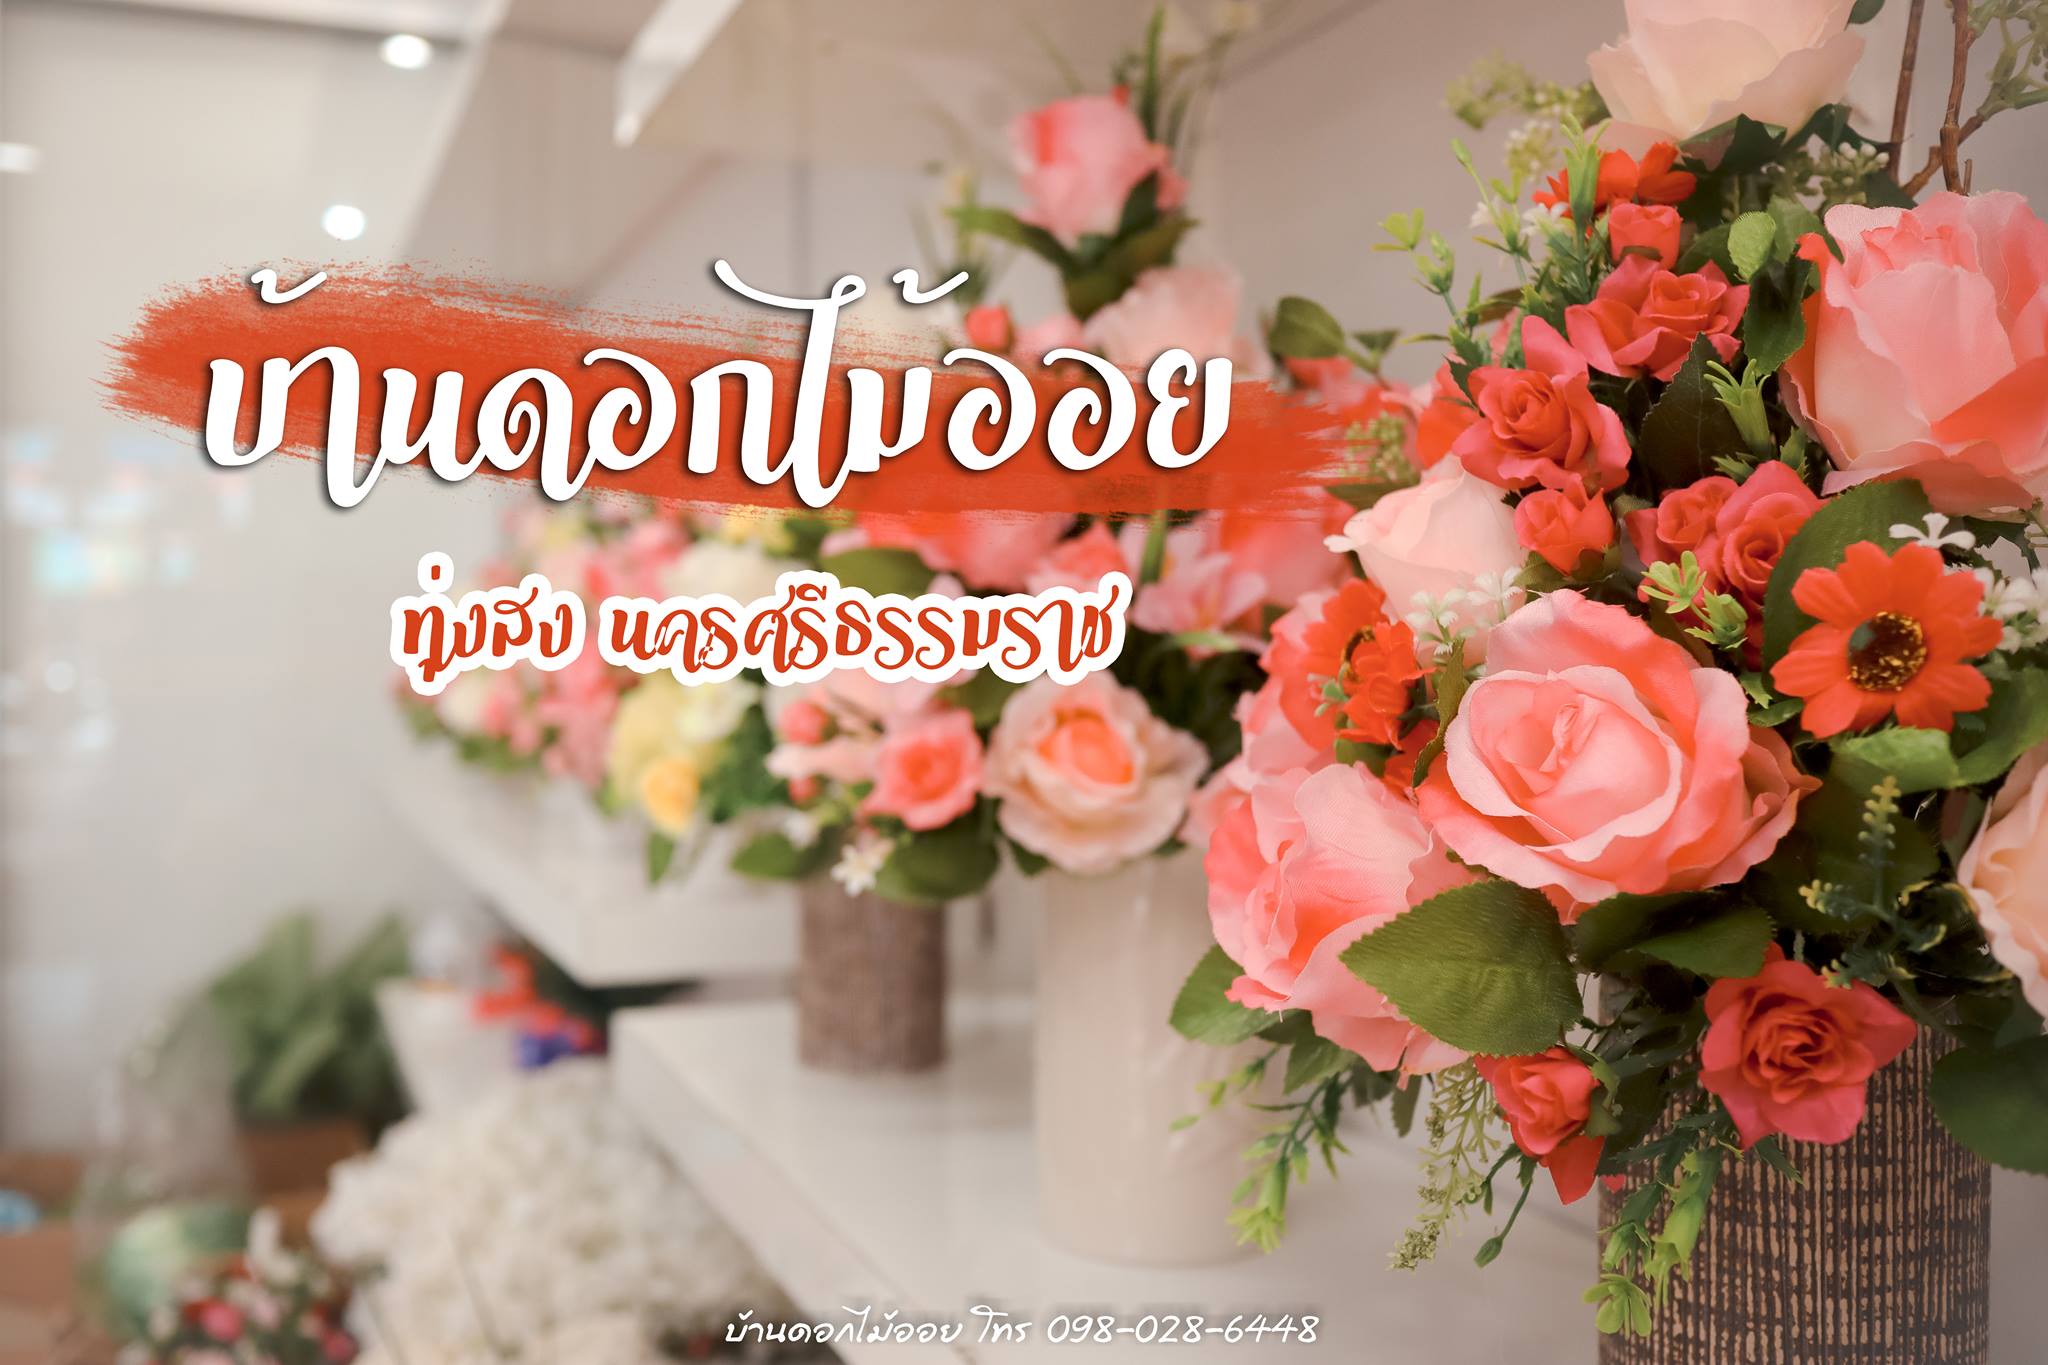 ร้านดอกไม้ ทุ่งสง นครศรีธรรมราช บ้านดอกไม้ออย รับทำช่อดอกไม้ และดอกไม้ในงานและโอกาสต่างๆ